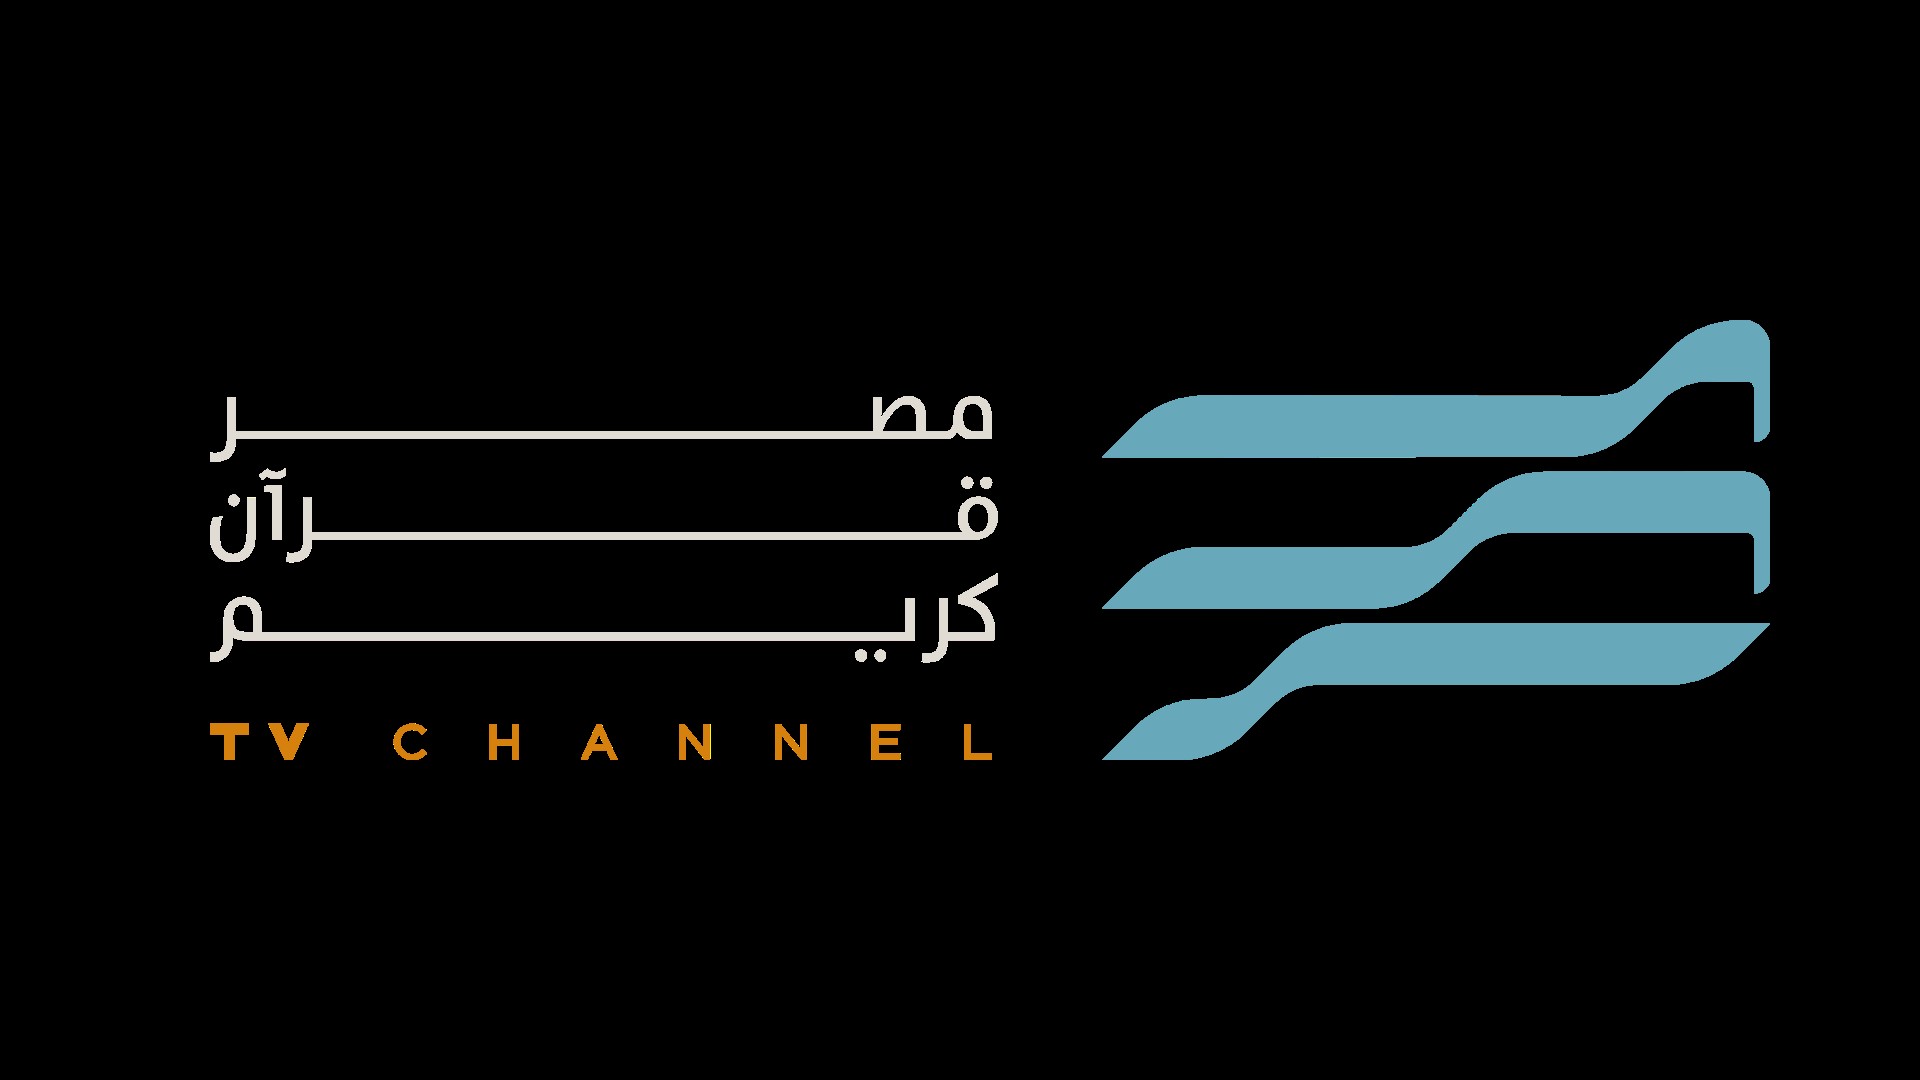  انطلاق البث التجريبى غدا لقناة تبث القرآن الكريم بأصوات مشاهير القراء المصريين